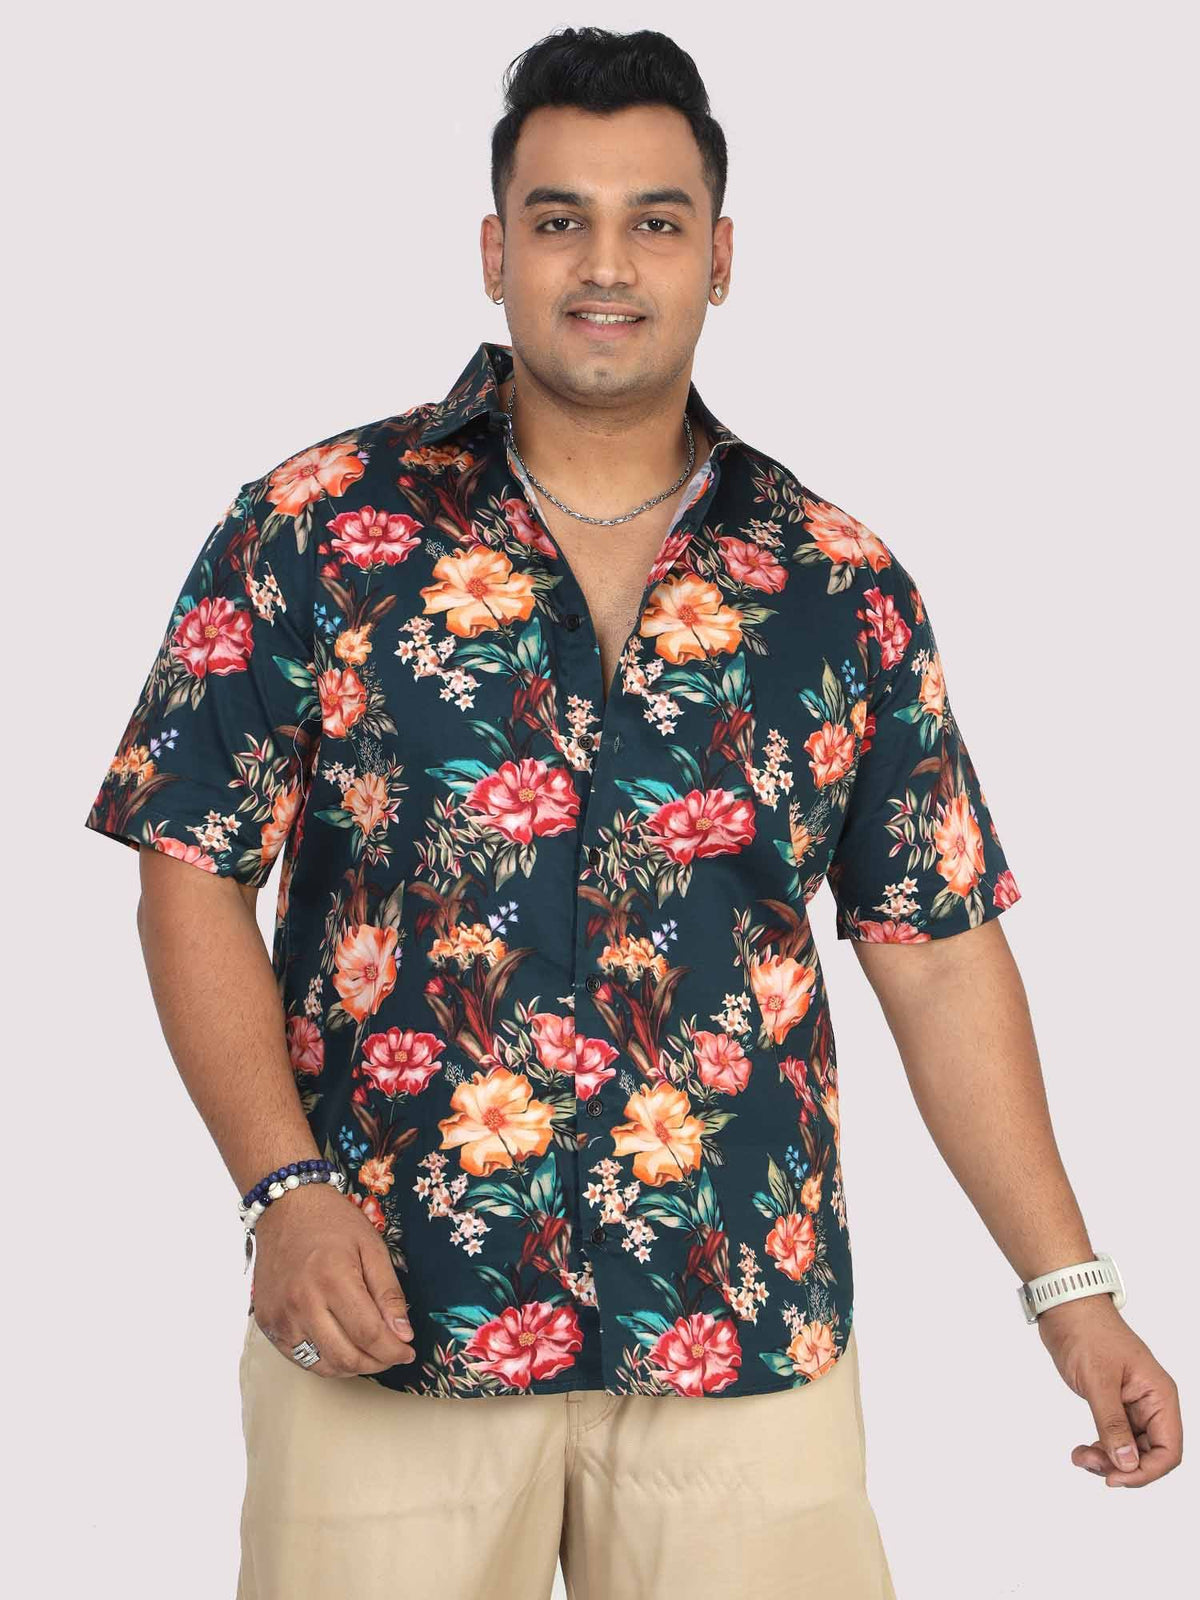 What Should You Wear to a Hawaiian Luau Party? – AlohaFunWear.com